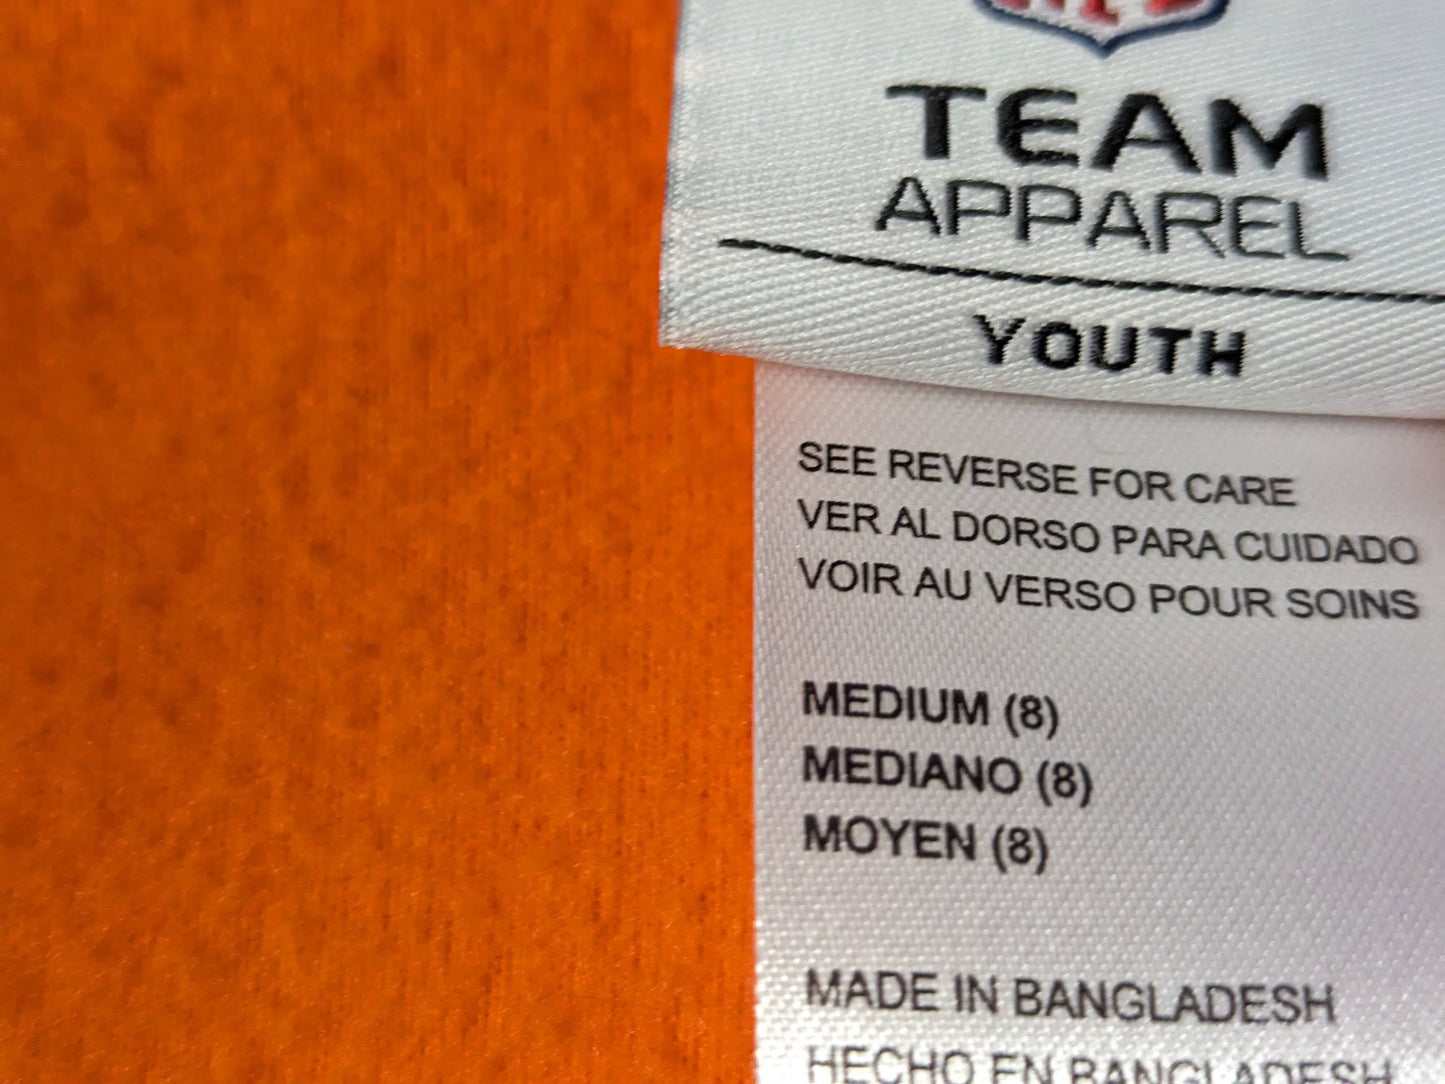 Denver Broncos NFL Fleece Jacket Coat Size Youth Color Orange Condition Used